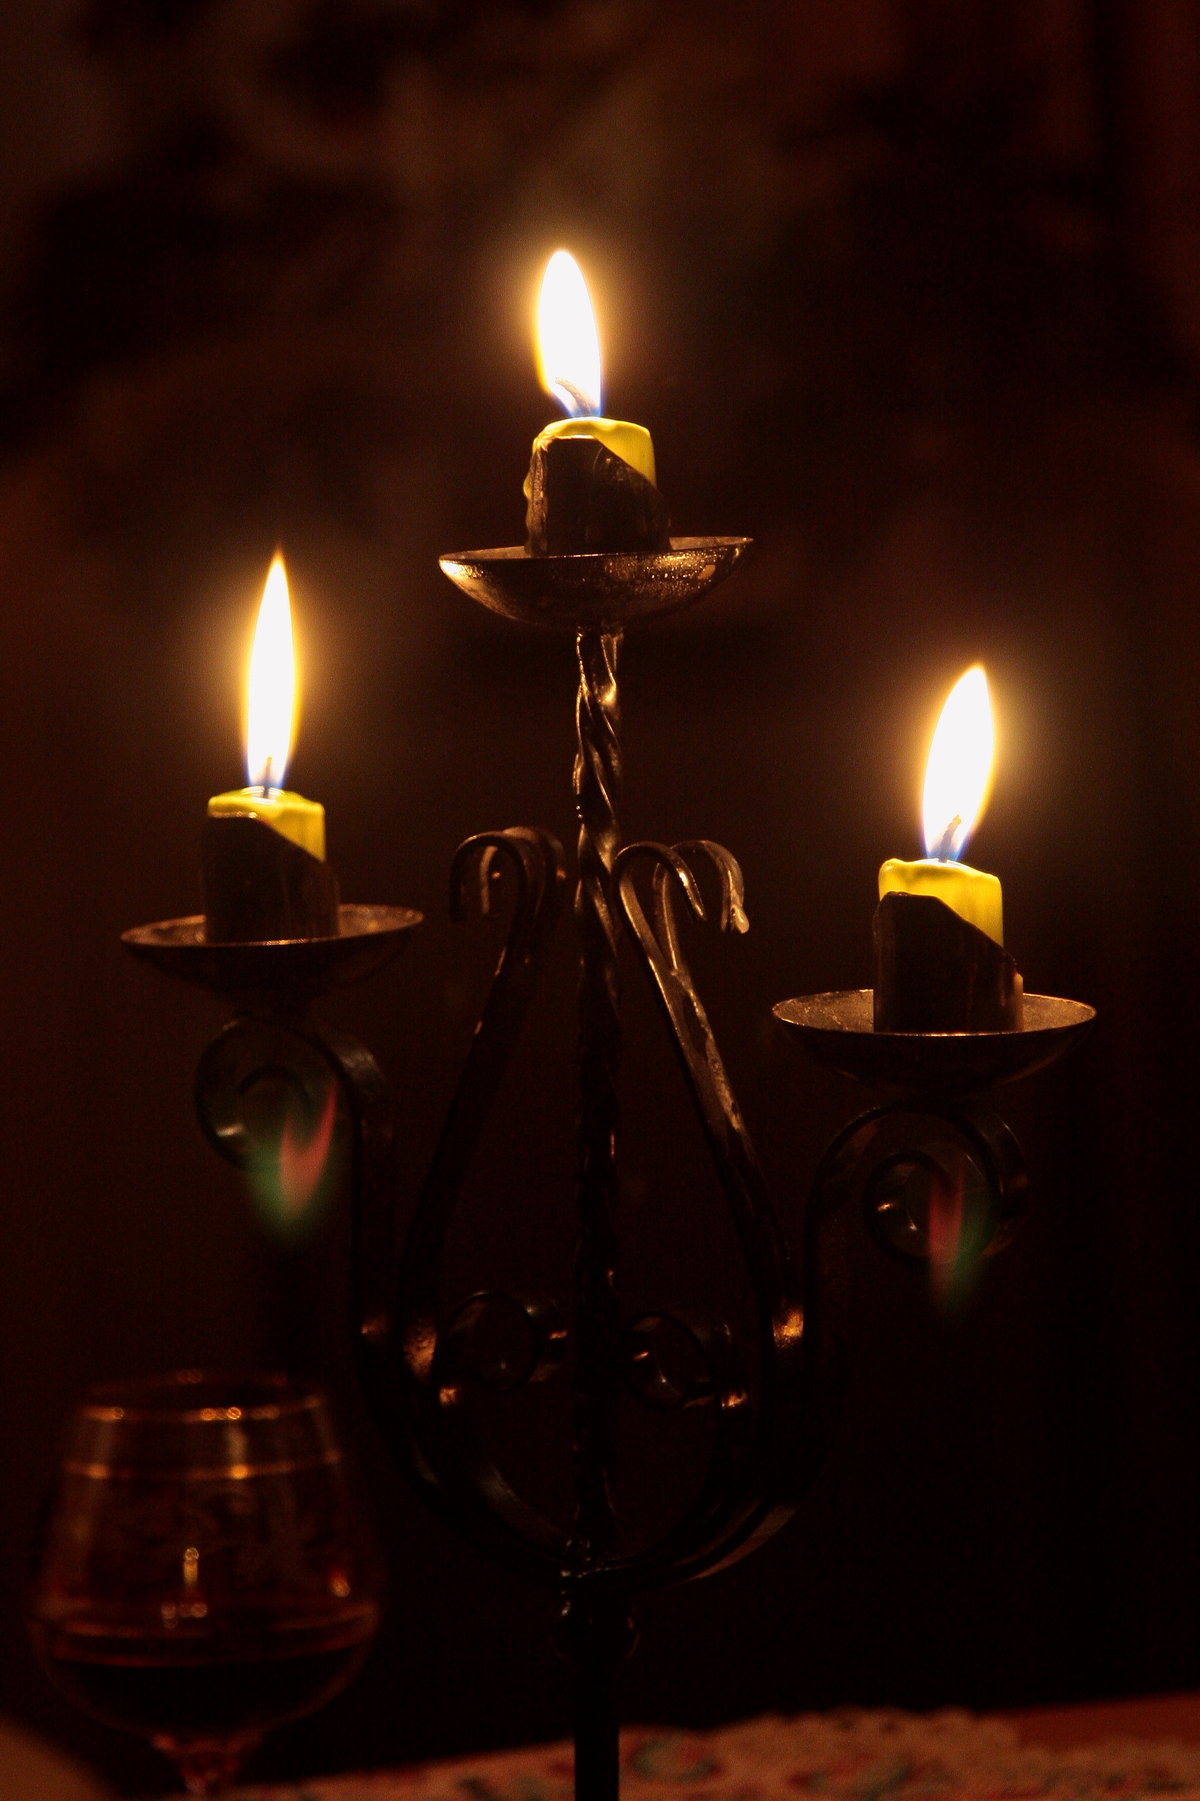 Свечи погасли в церкви. Свеча в подсвечнике. Горящие свечи. Горящие свечи в канделябре. Канделябр со свечами.